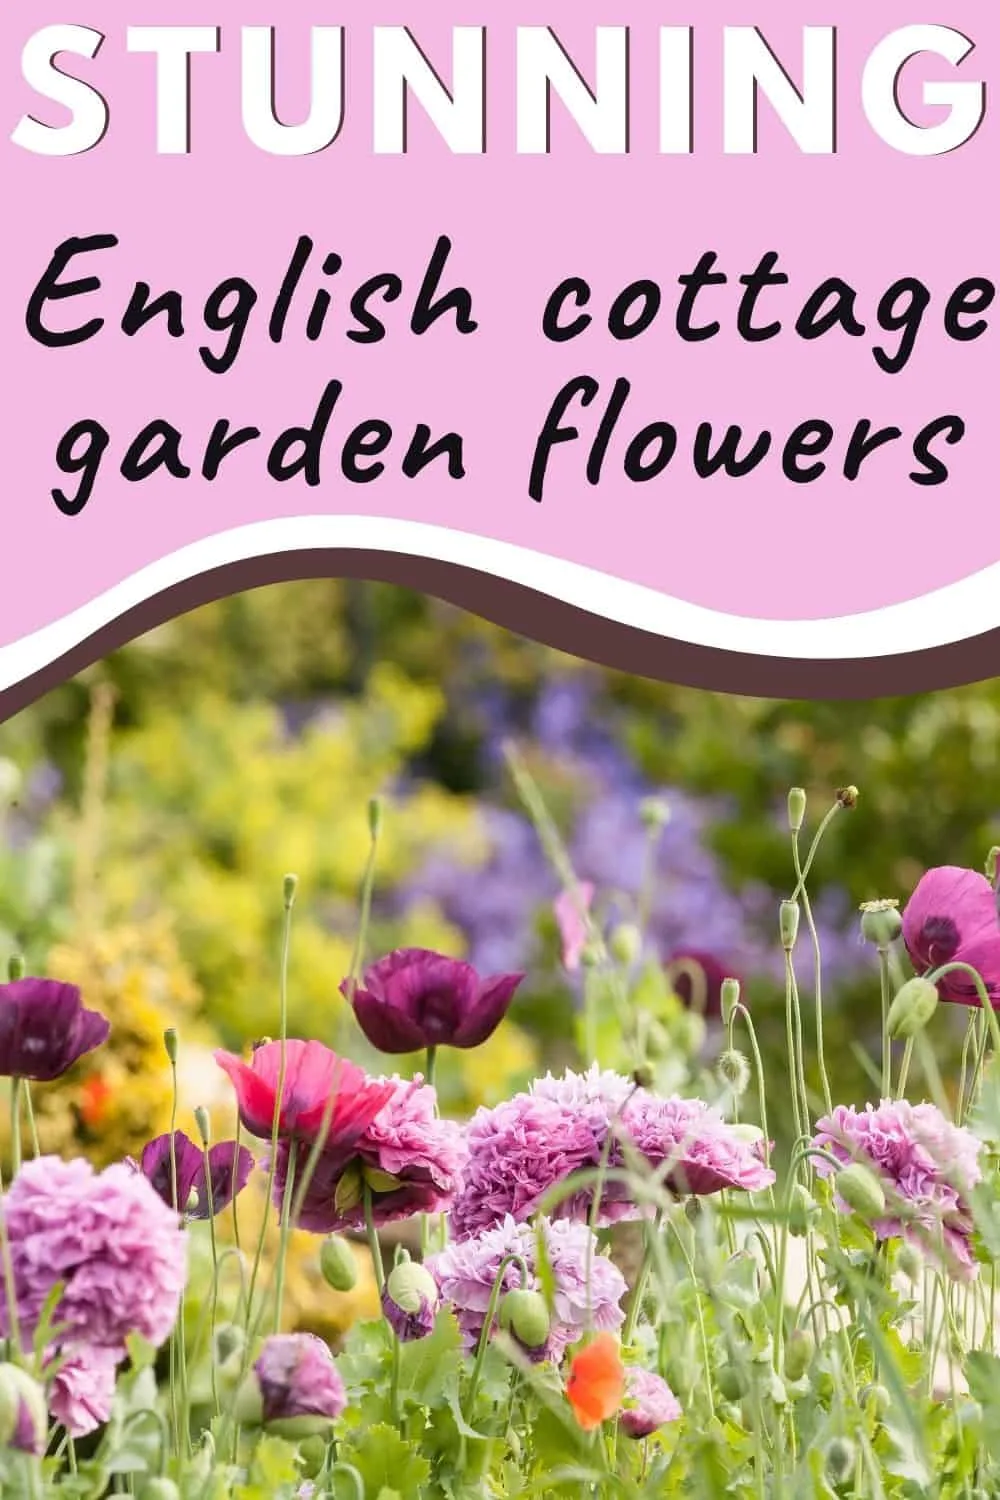 Stunning English cottage garden flowers